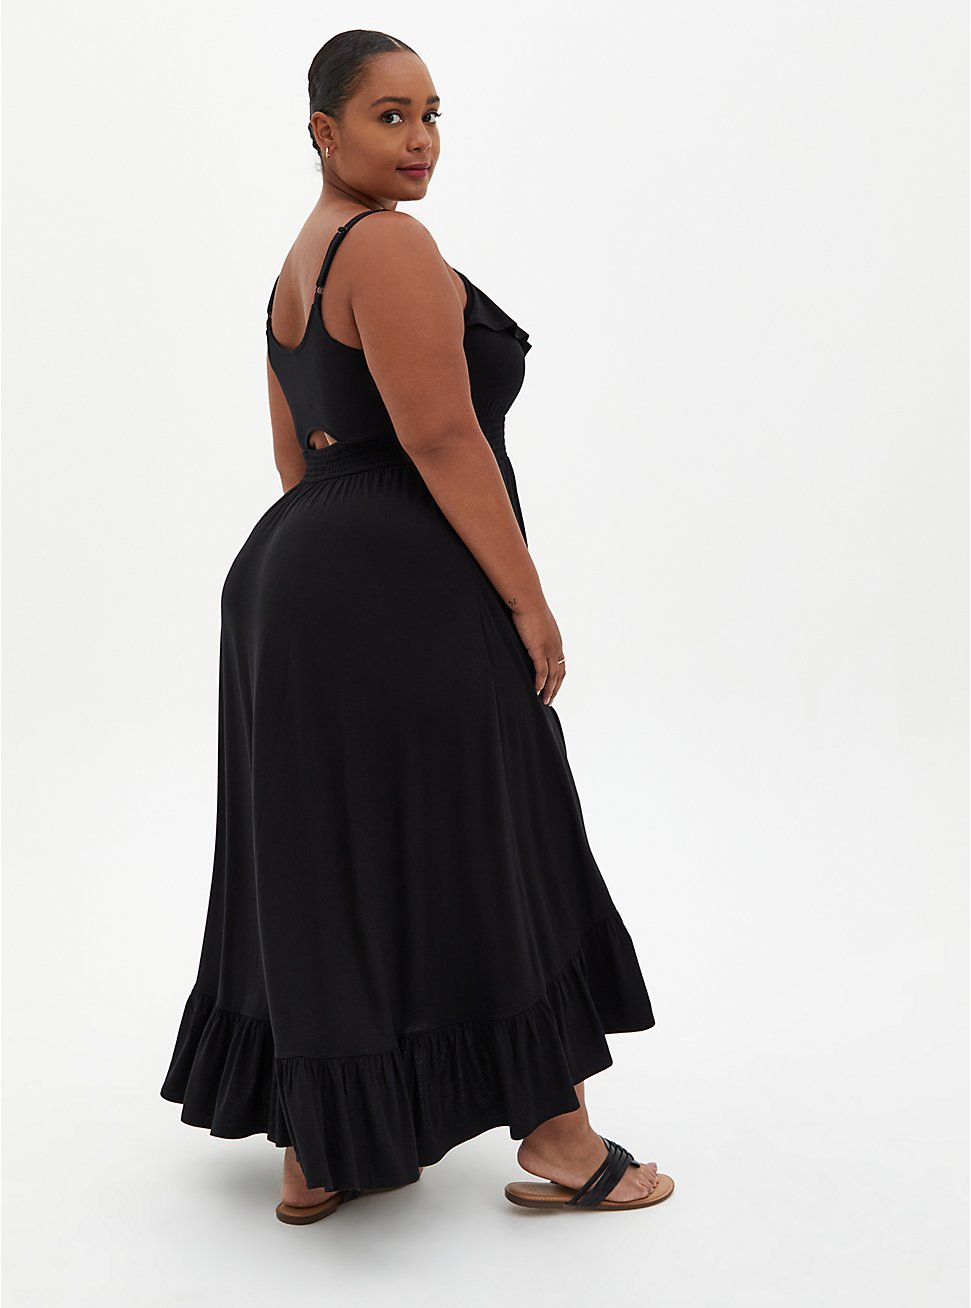 Maxi Super Soft Hi-Low Dress, DEEP BLACK, hi-res